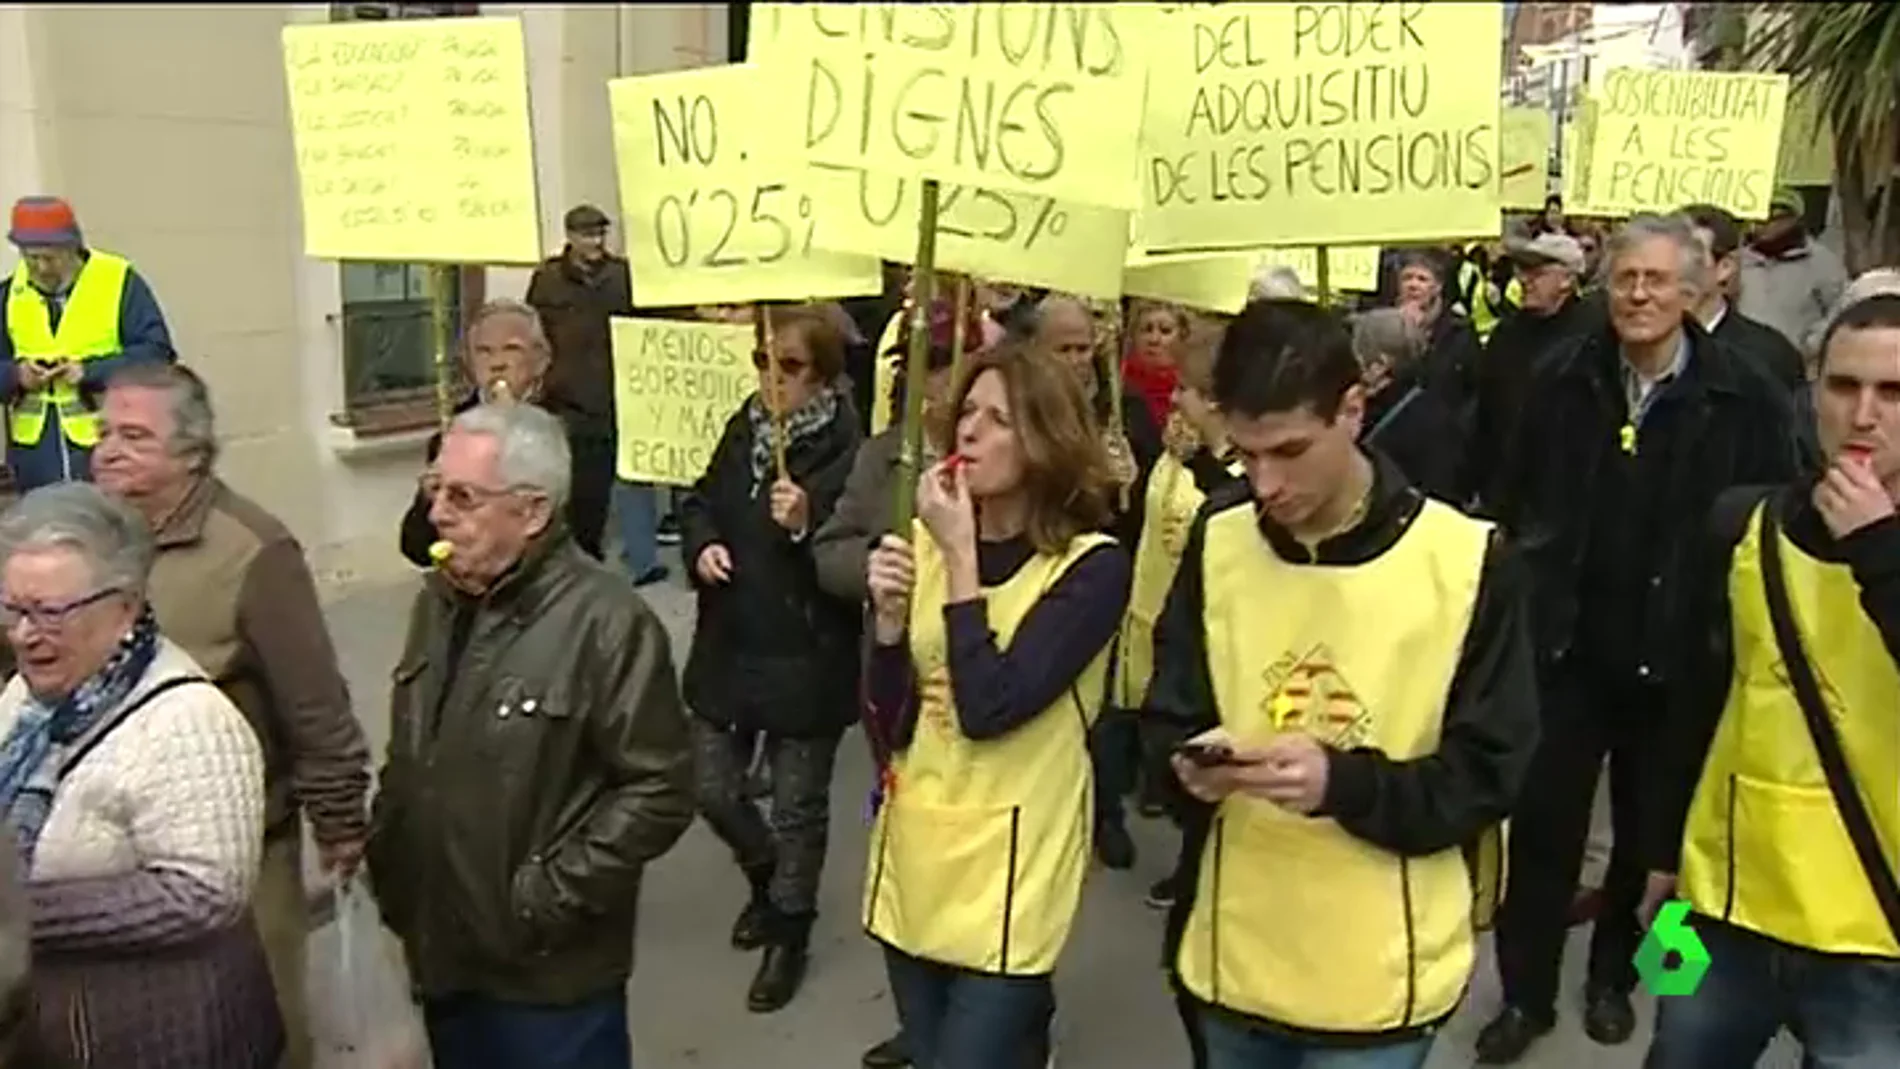 Los yayoflautas de Barcelona salen a la calle por unas pensiones dignas: "Que se enteren que no somos tontos"